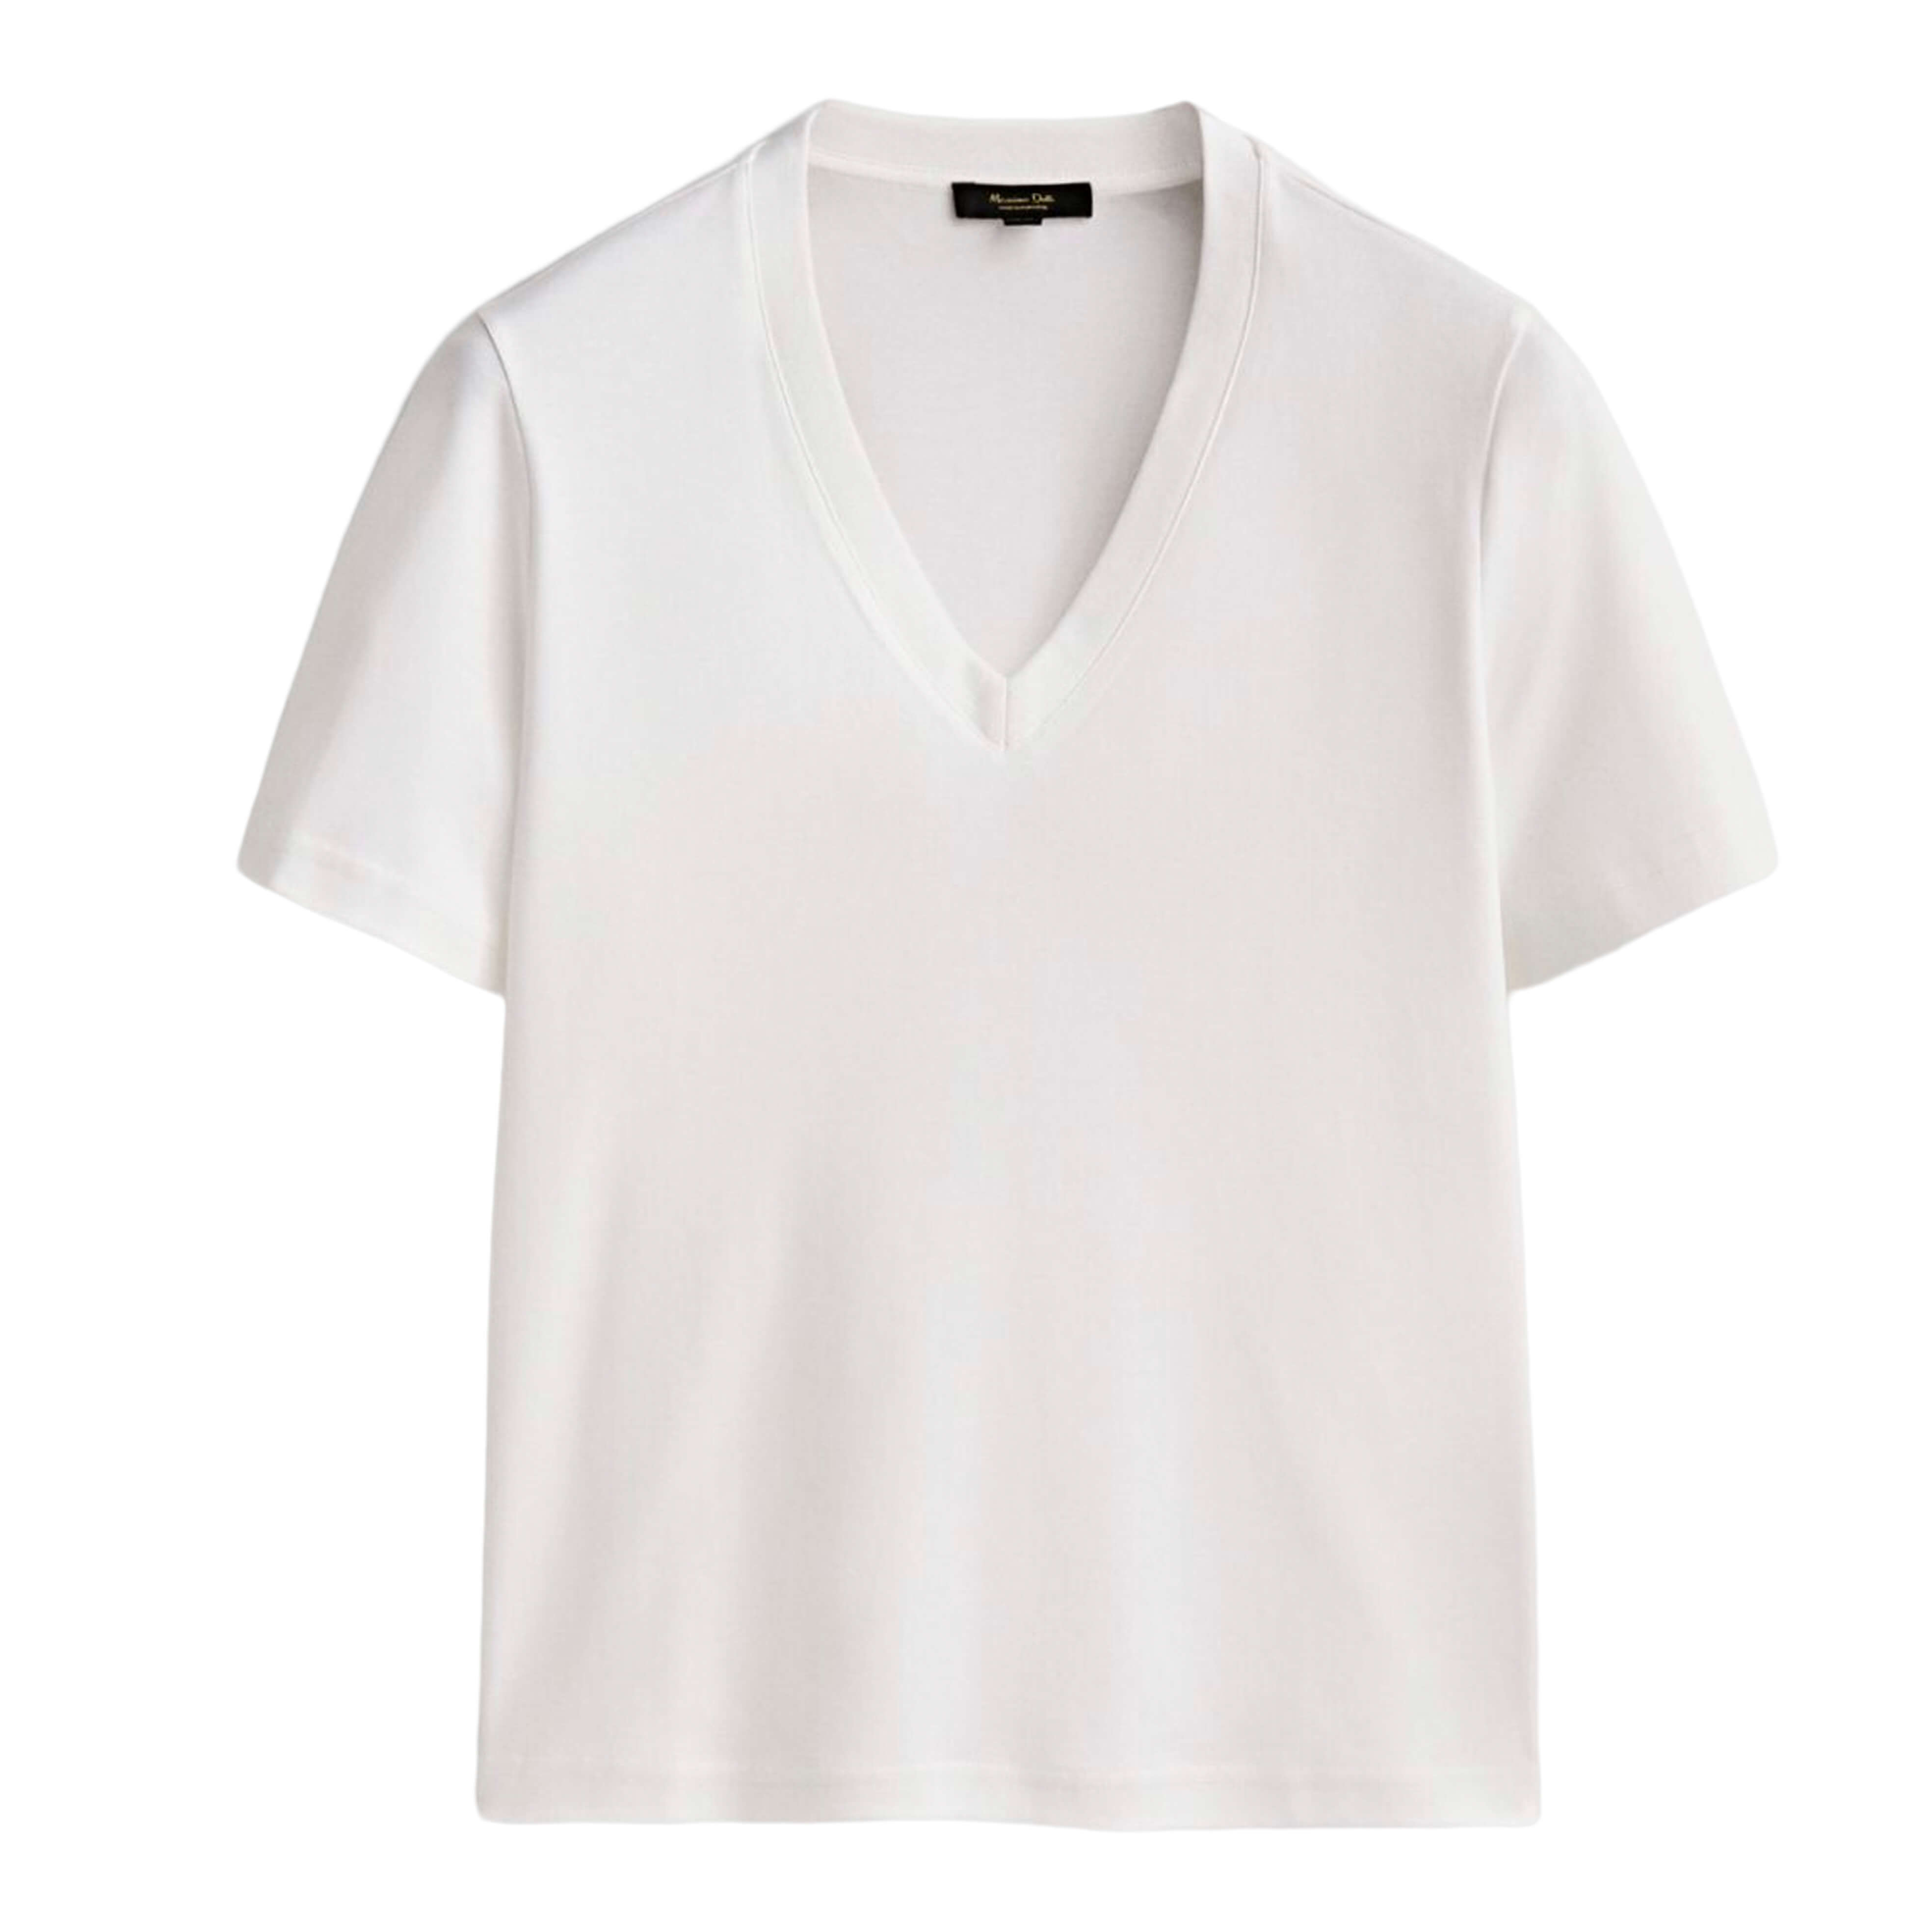 Футболка Massimo Dutti Cotton V-neck, белый футболка с короткими рукавами и v образным вырезом zelym xs s оранжевый